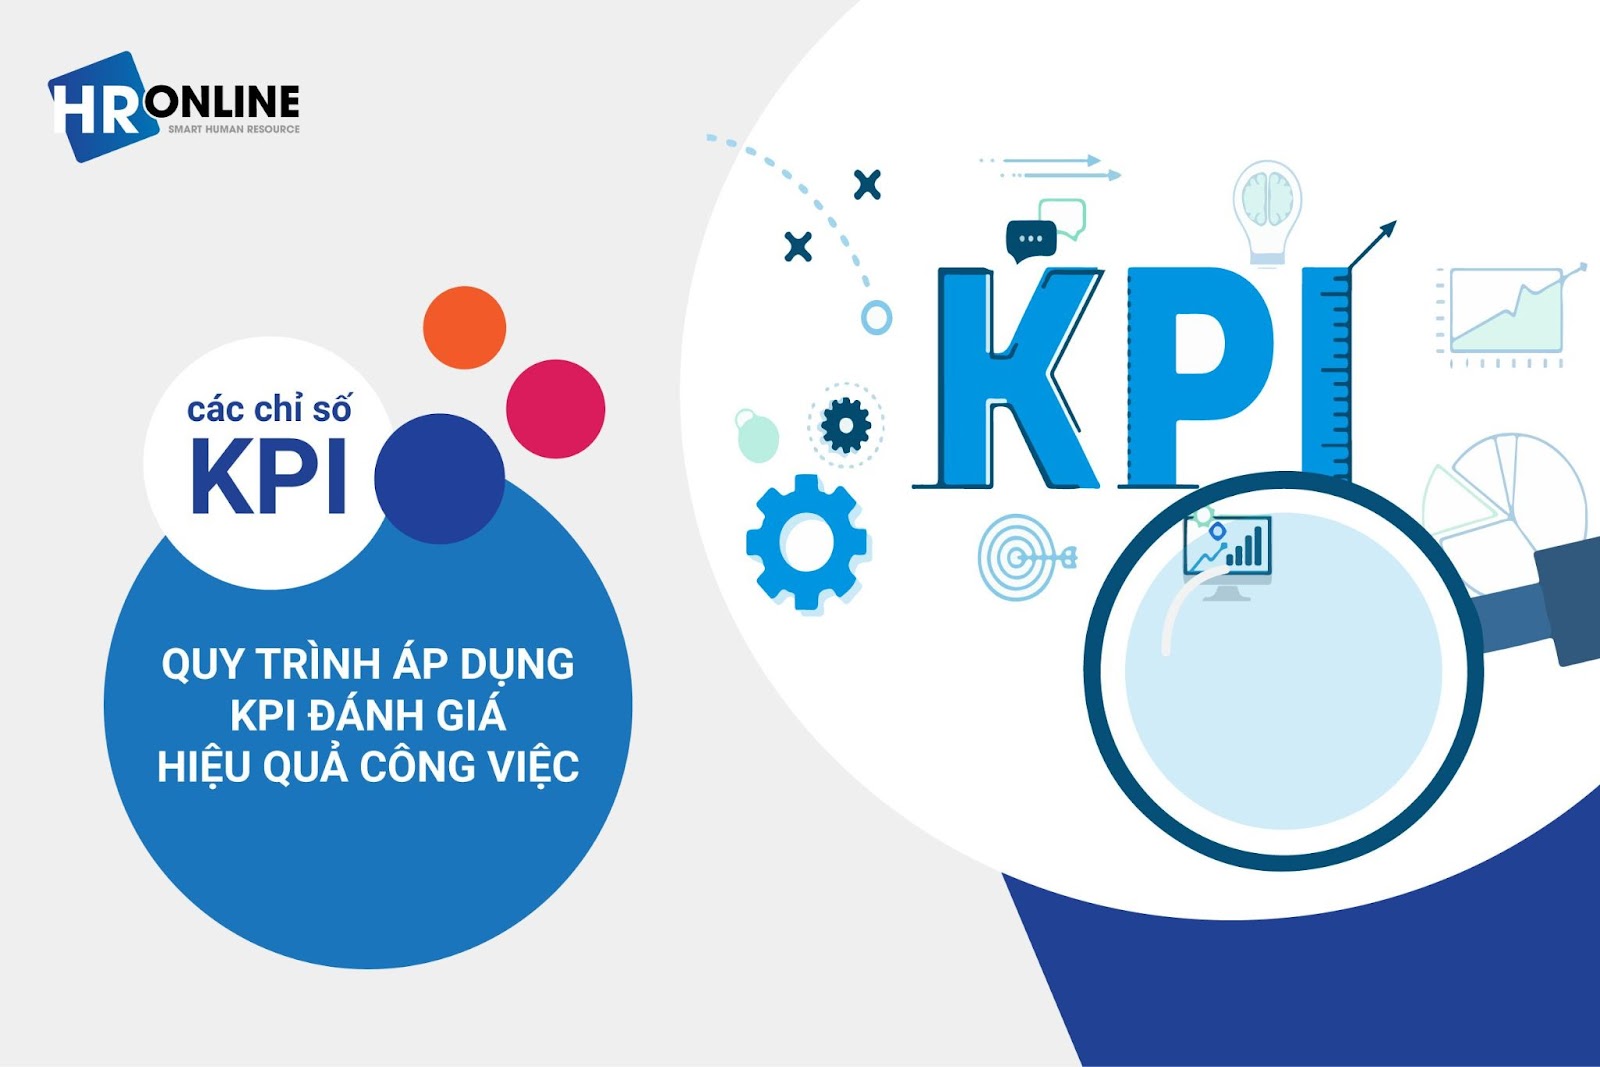 Quy trình áp dụng KPI đánh giá hiệu quả công việc